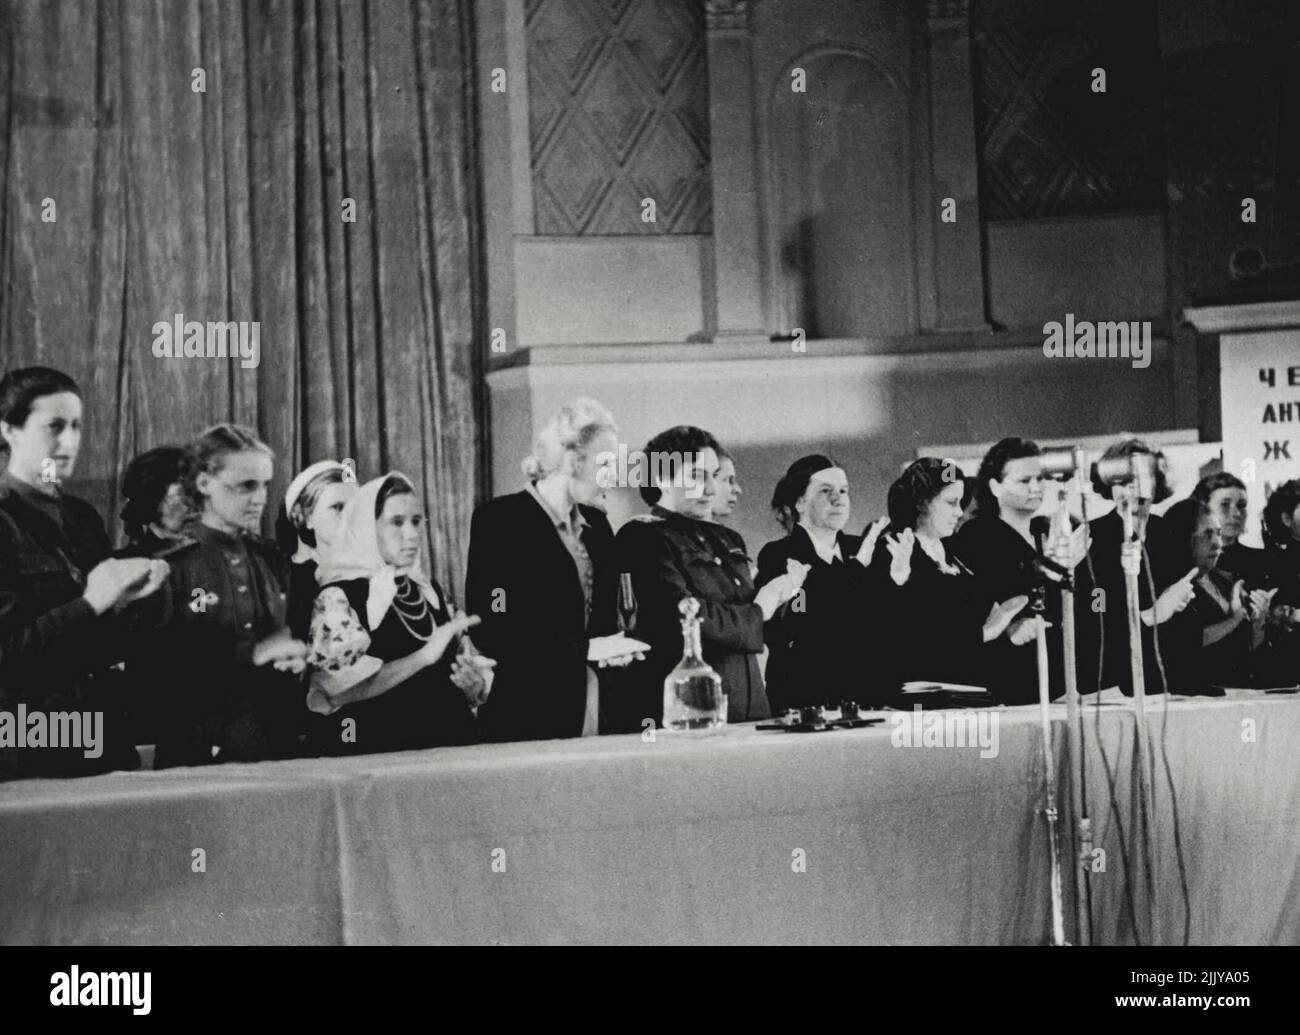 Viertes antifaschistisches Frauentreffen -- das vierte antifaschistische Frauentreffen der Sowjetunion fand am 20. August 1944 in der Tschaikowski-Konzerthalle in Moskau statt. Oben kommt das Präsidium des Treffens zu Applaus, als Natalie Uzhvy, Volkskünstlerin der UdSSR, ihre abschließenden Bemerkungen macht: "Ruhm und viele Jahre des Lebens für Marschall Stelin!" 3. September 1951. (Foto von M. Ozersky). Stockfoto